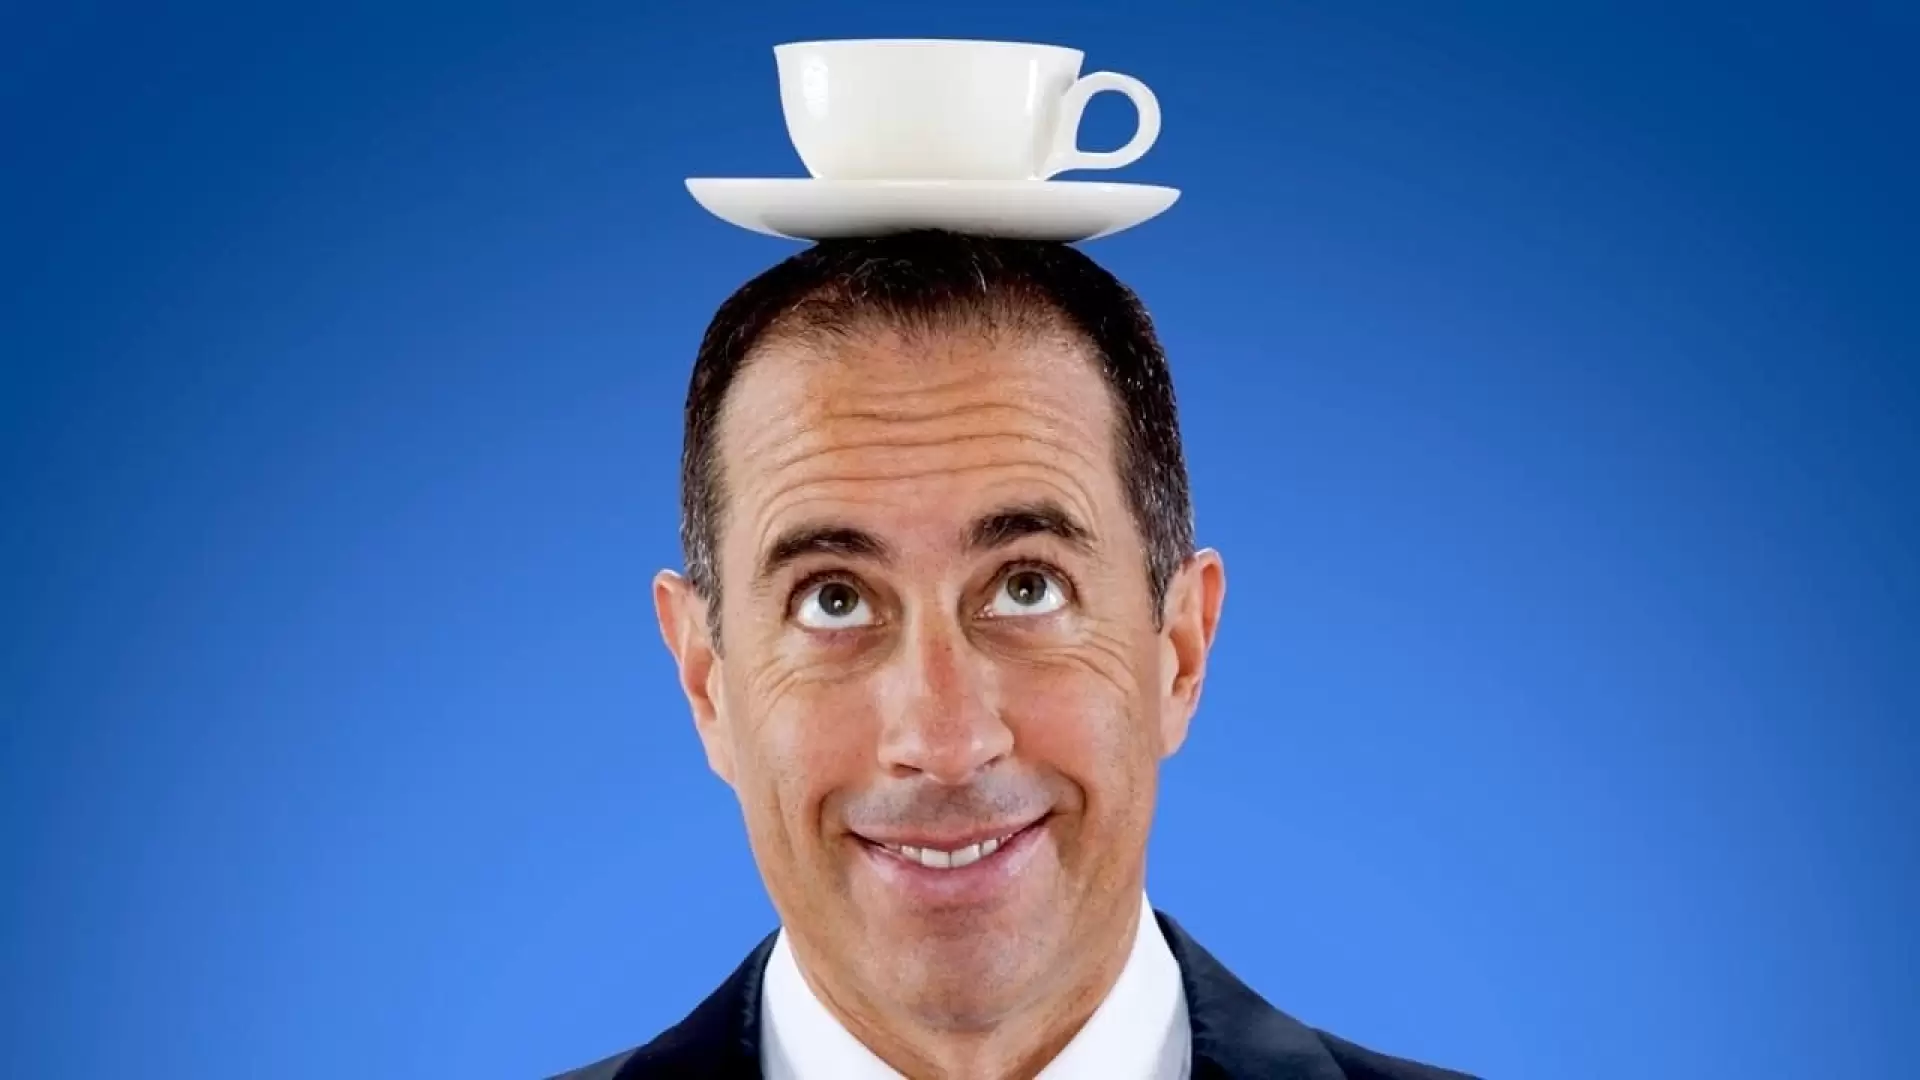 دانلود سریال Comedians in Cars Getting Coffee 2012 (کمدین‌ها با اتومبیل به خوردن قهوه می‌روند)